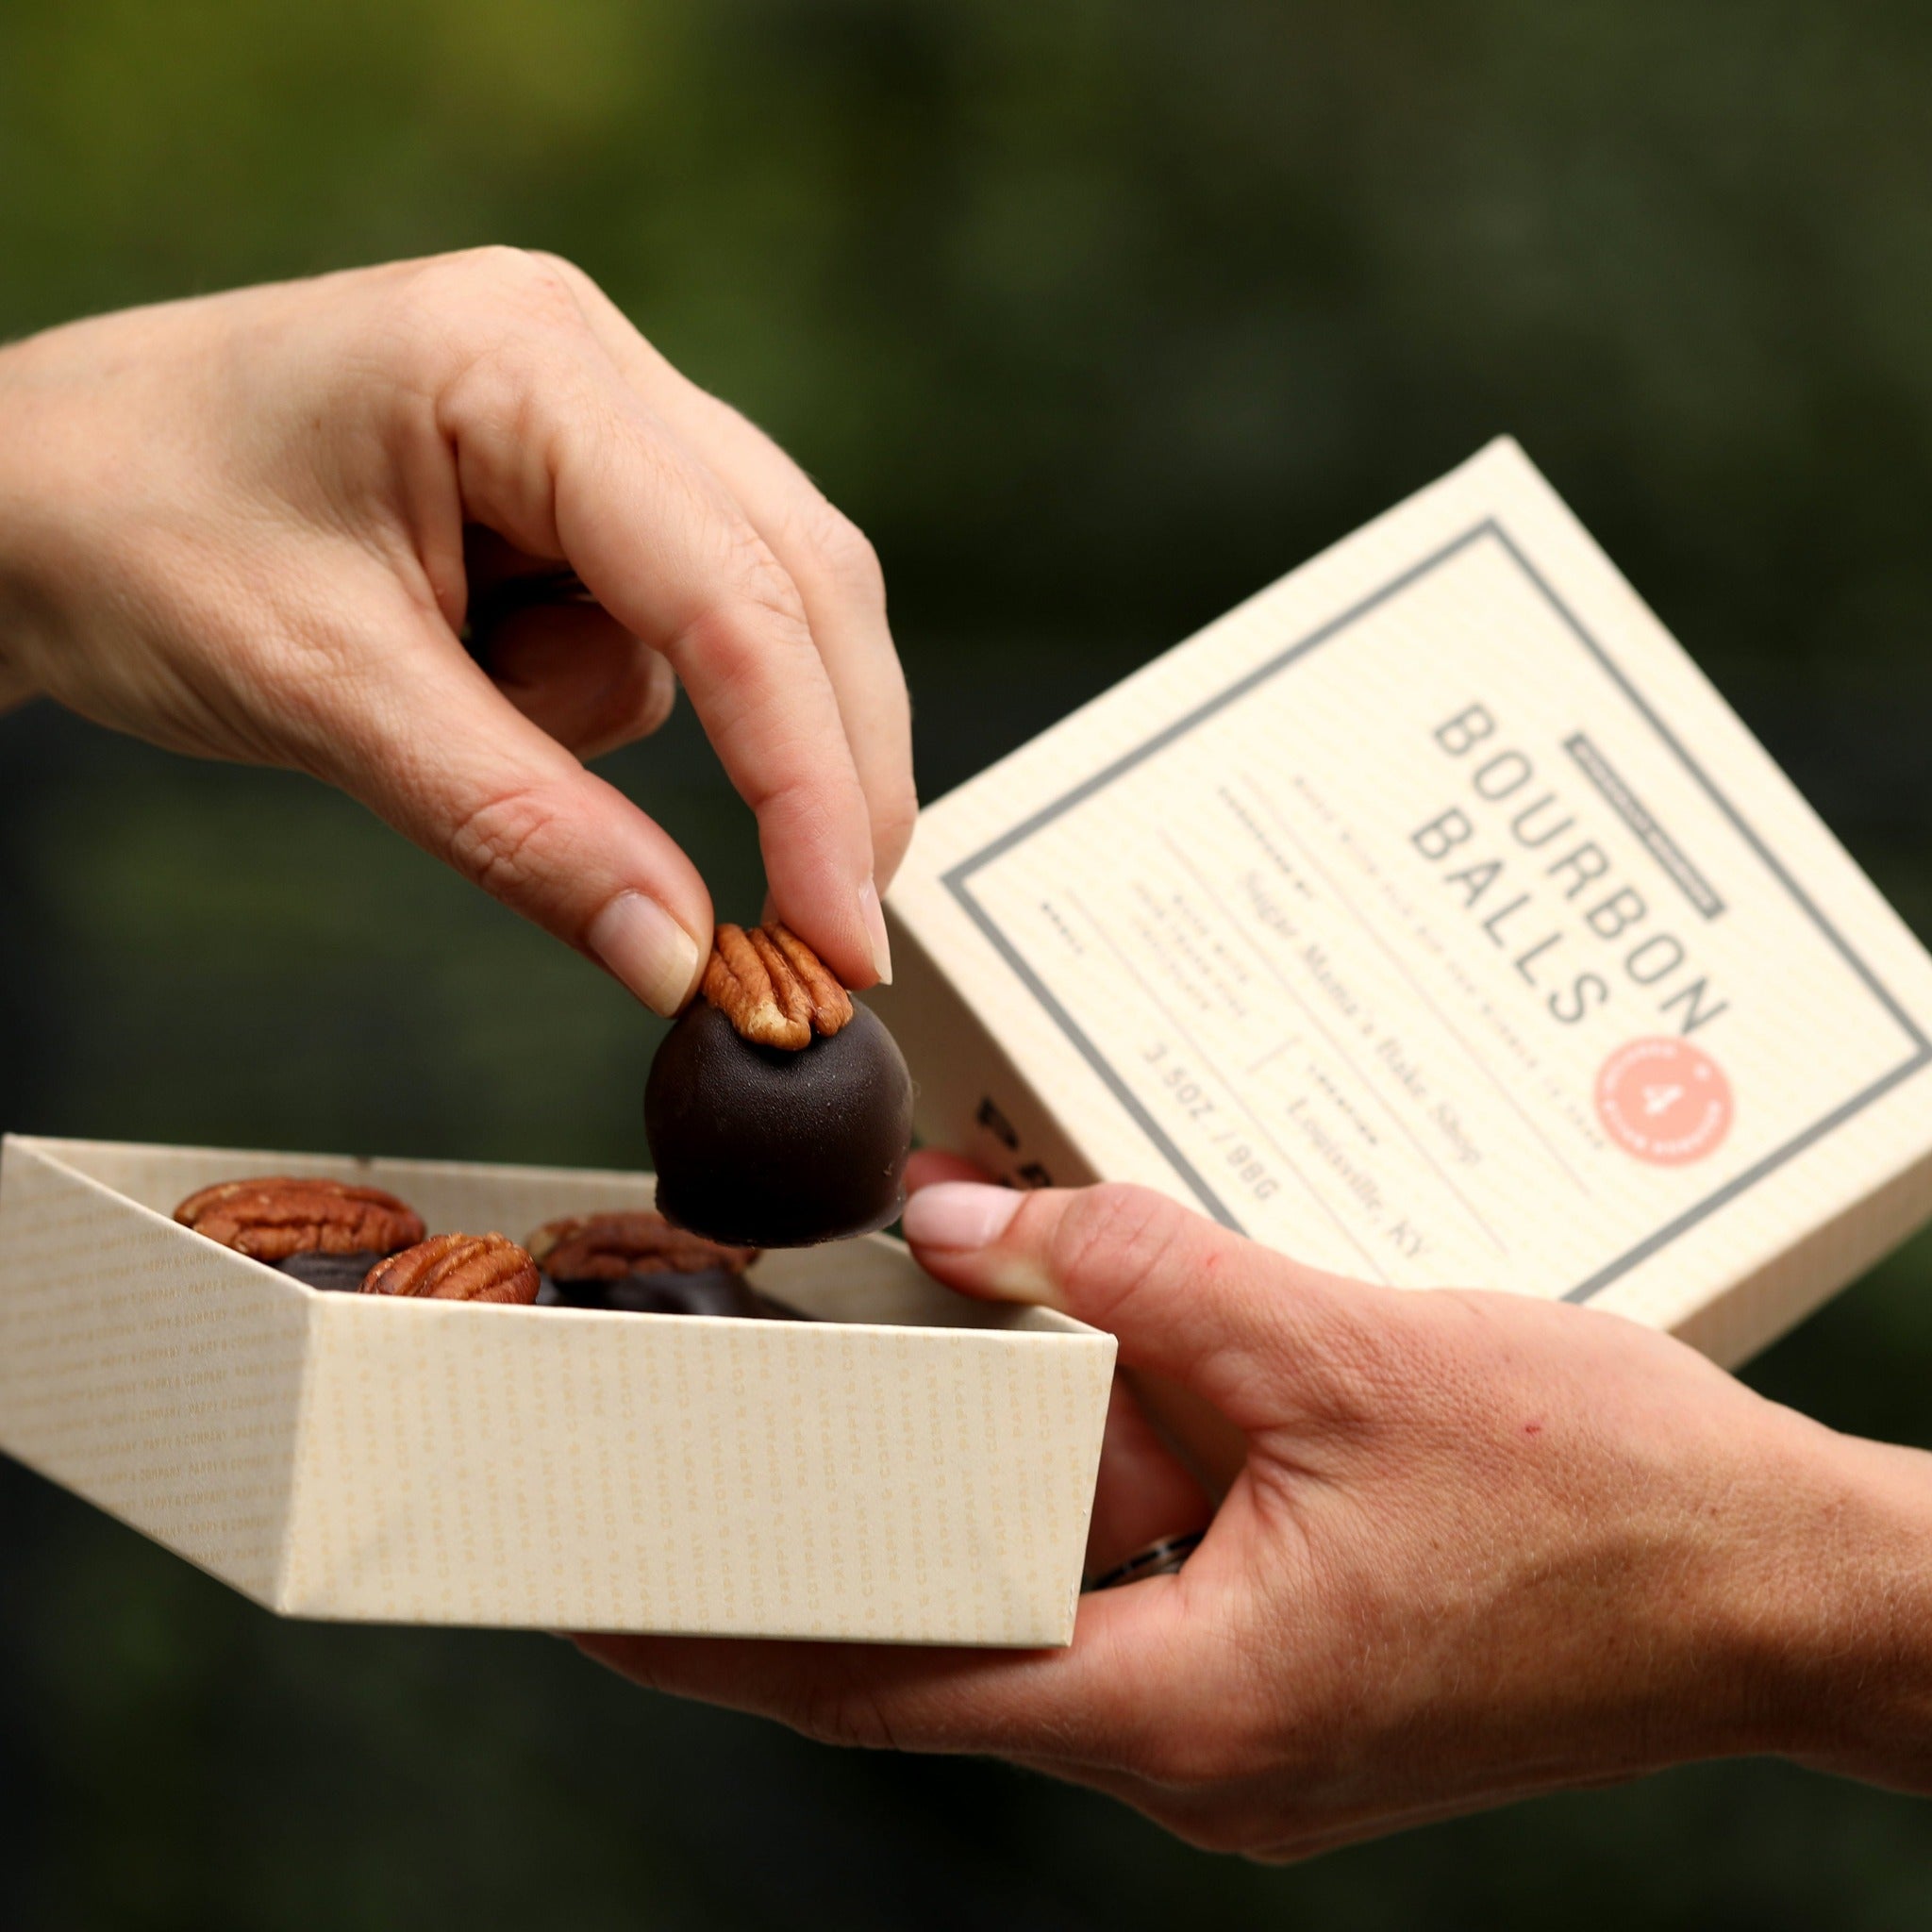 Bourbon Chocolate: Mùi vị vị của Bourbon Chocolate sẽ khiến bạn chìm đắm vào một thế giới ngọt ngào. Năm 2024, sản phẩm Bourbon Chocolate được cải tiến với công nghệ tiên tiến để mang đến trải nghiệm tuyệt vời hơn cho người tiêu dùng. Hãy xem hình ảnh liên quan để cảm nhận vị ngọt lịm này.